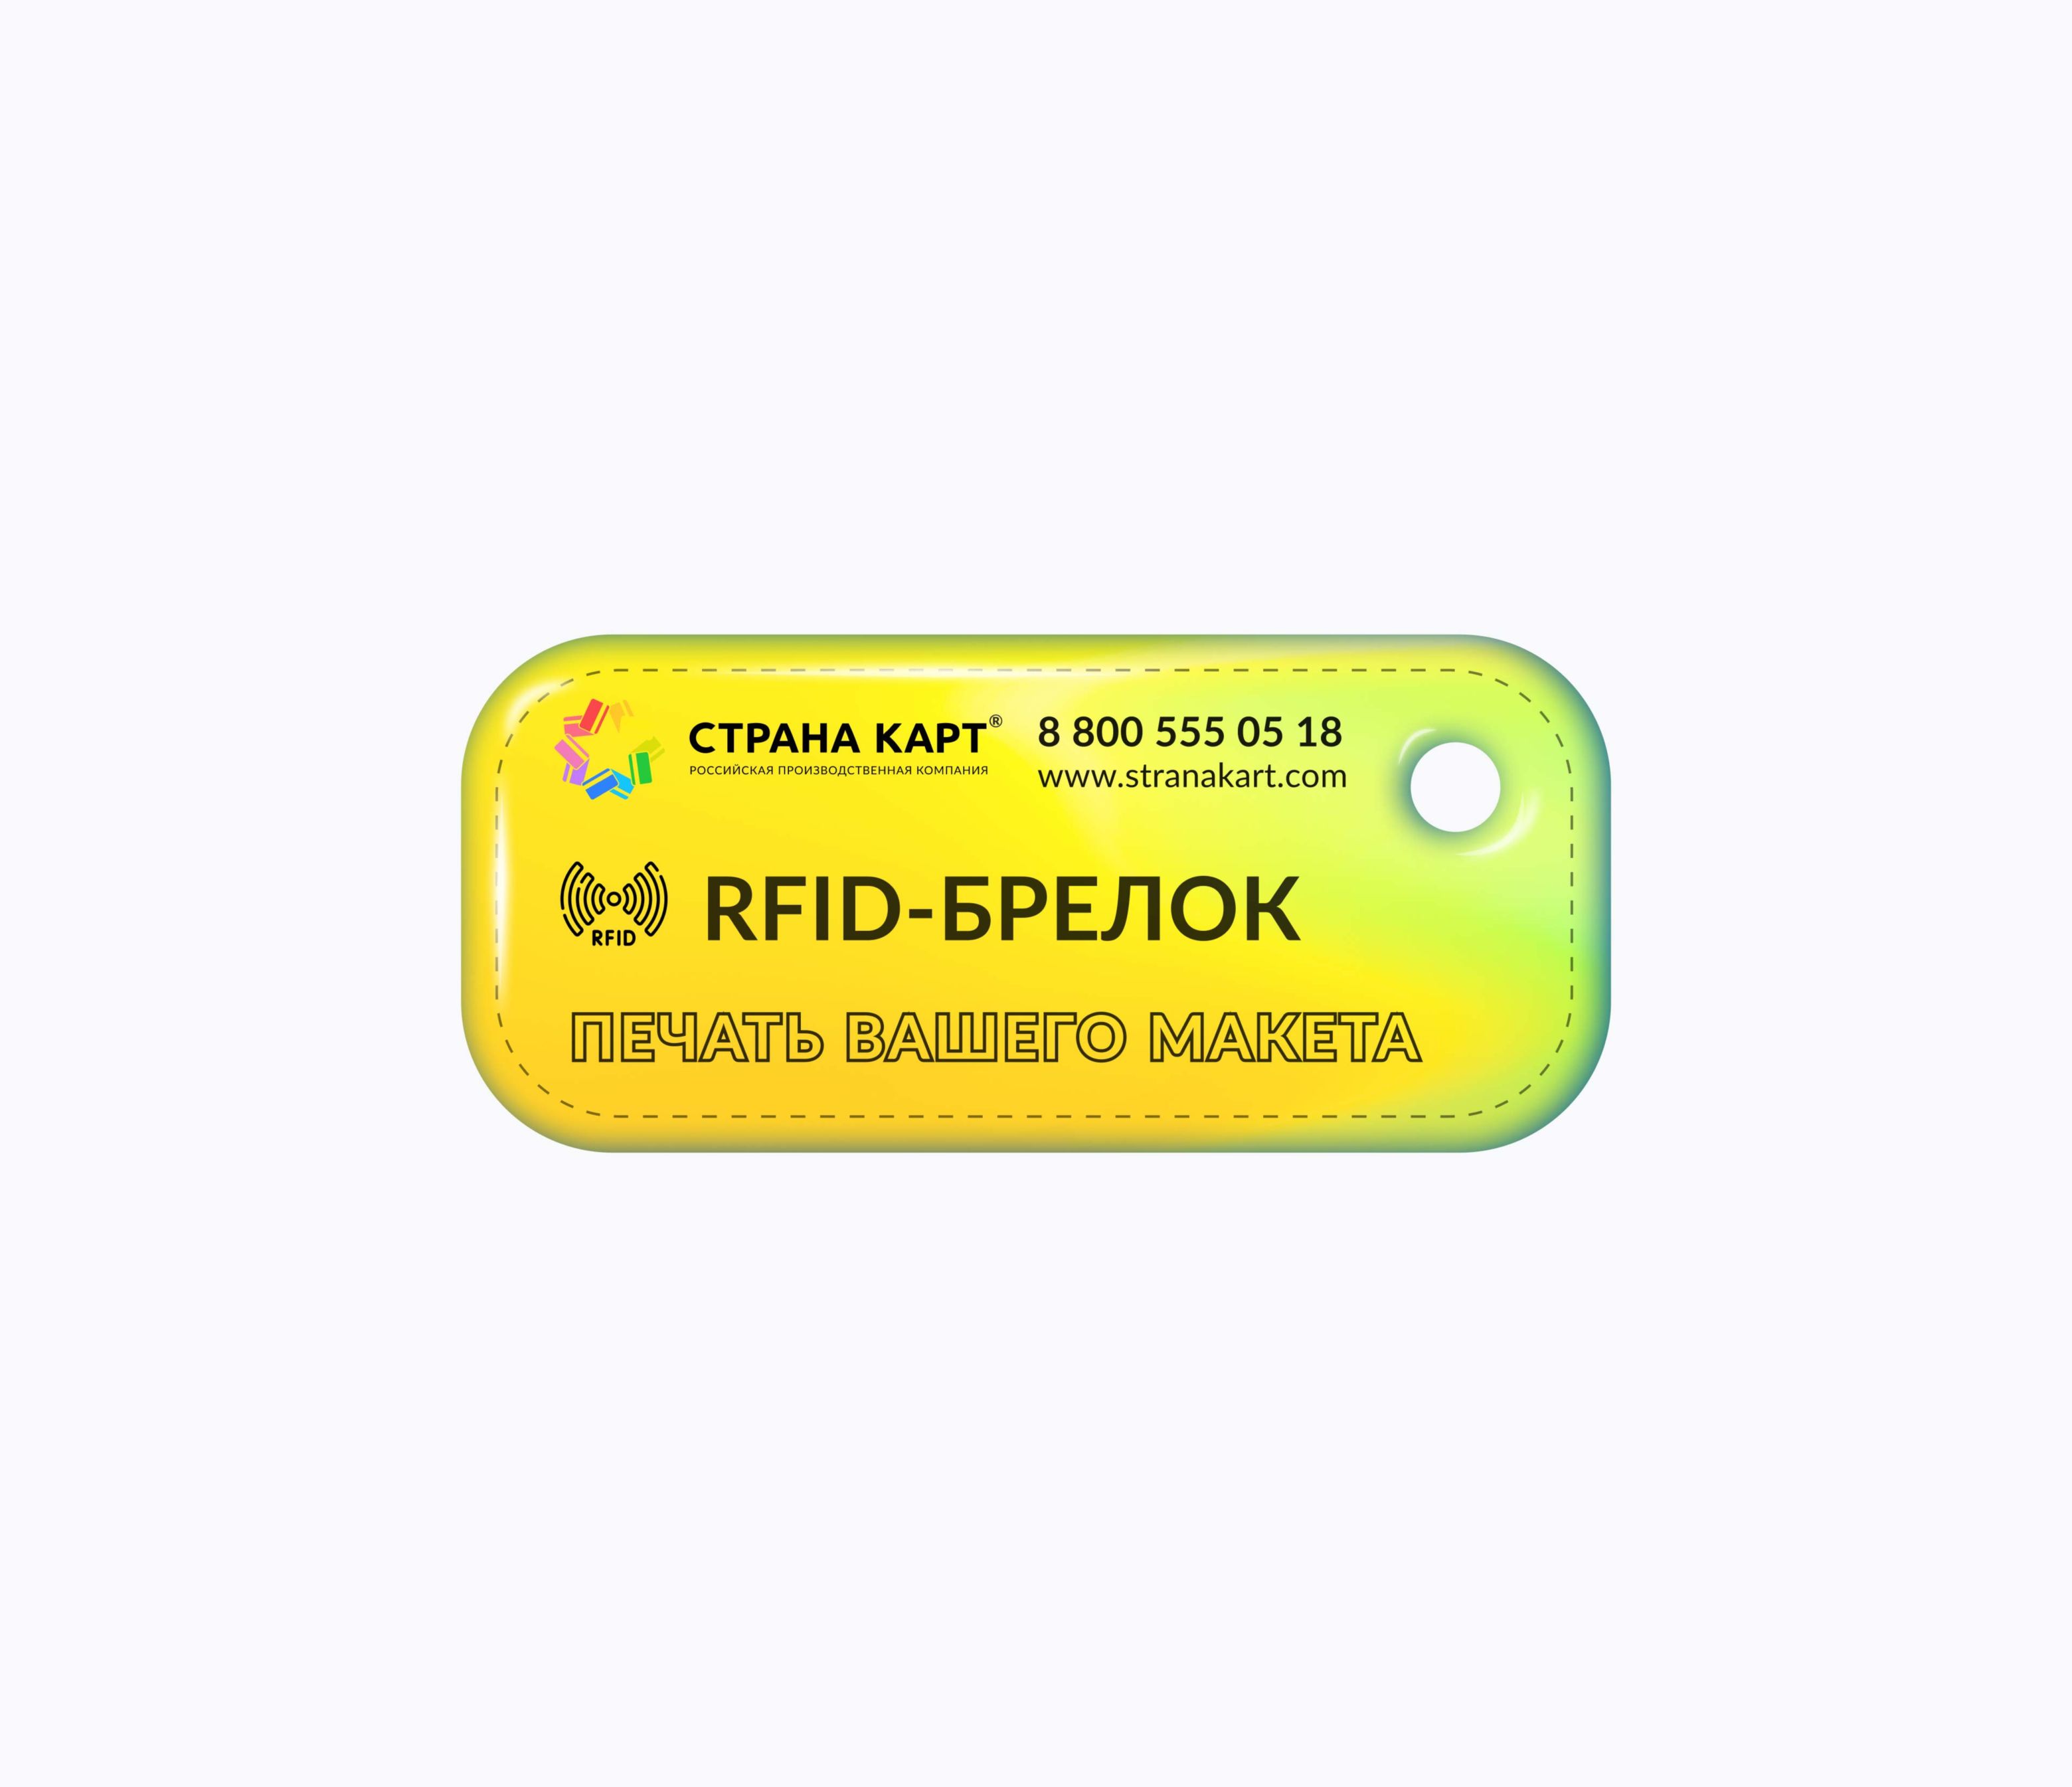 Прямоугольные Мини социальные RFID-брелоки NEOKEY® с чипом Социальные RFID-брелоки NEOKEY® с чипом